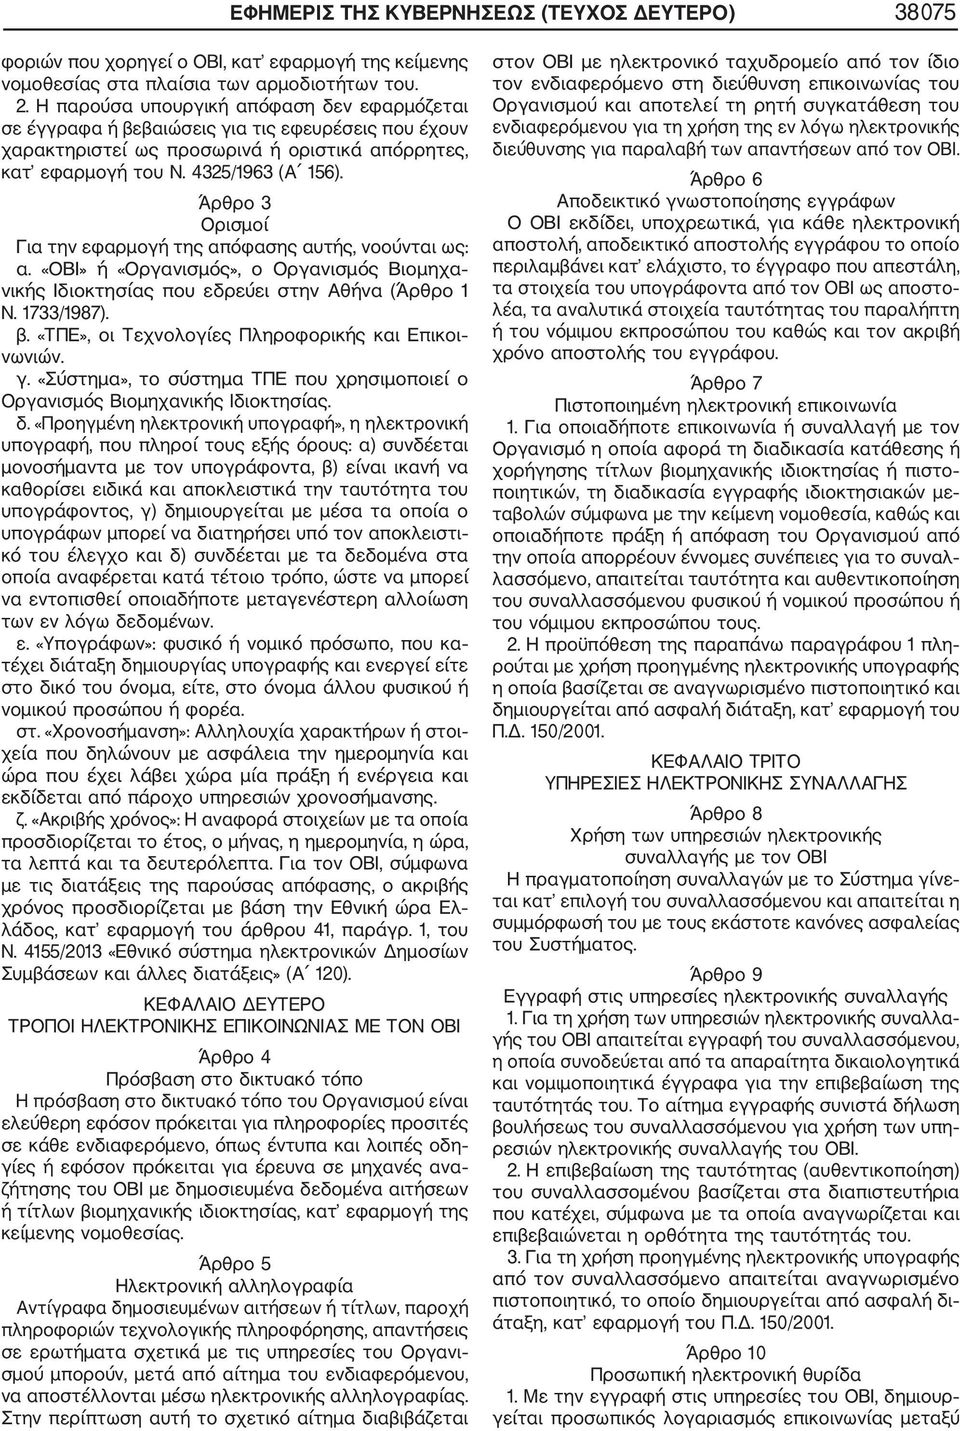 Άρθρο 3 Ορισμοί Για την εφαρμογή της απόφασης αυτής, νοούνται ως: α. «ΟΒΙ» ή «Οργανισμός», ο Οργανισμός Βιομηχα νικής Ιδιοκτησίας που εδρεύει στην Αθήνα (Άρθρο 1 Ν. 1733/1987). β.